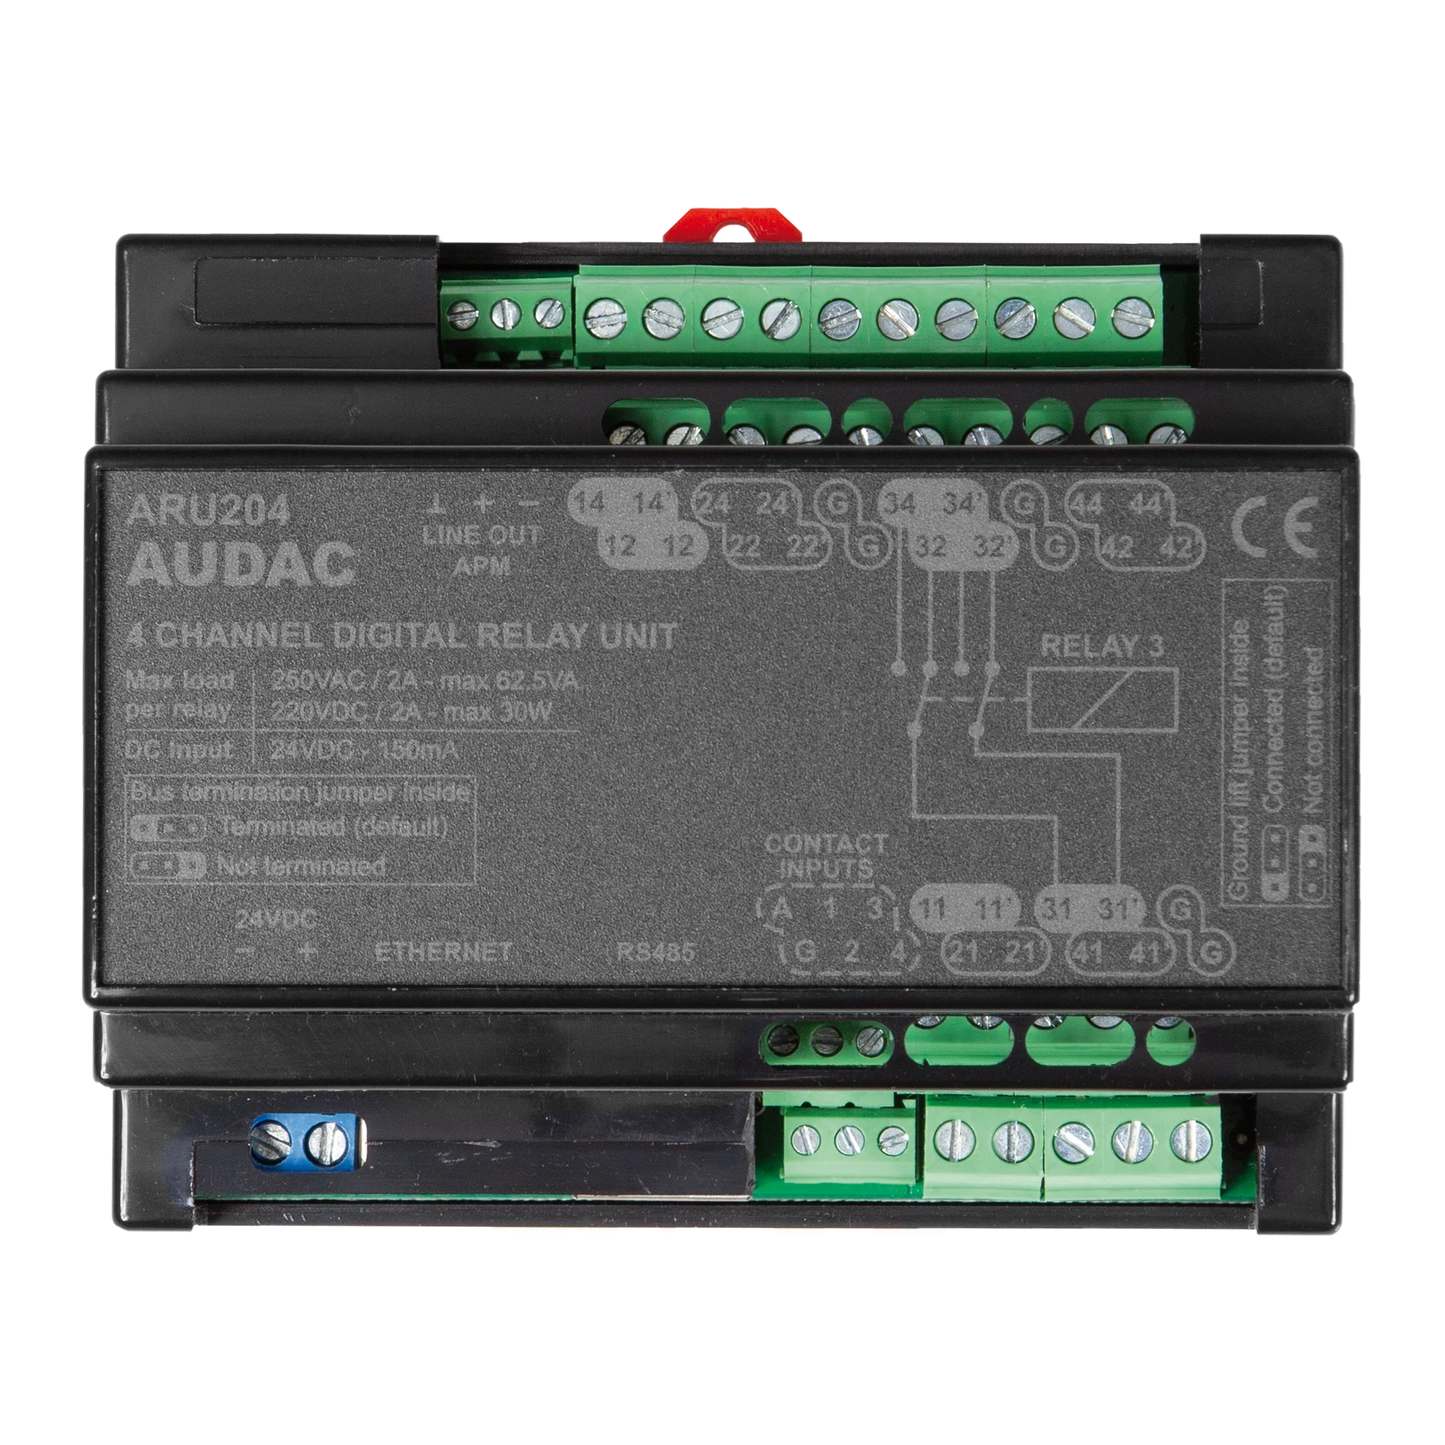 ARU204 Multi-channel digital relay unit - 4 relays